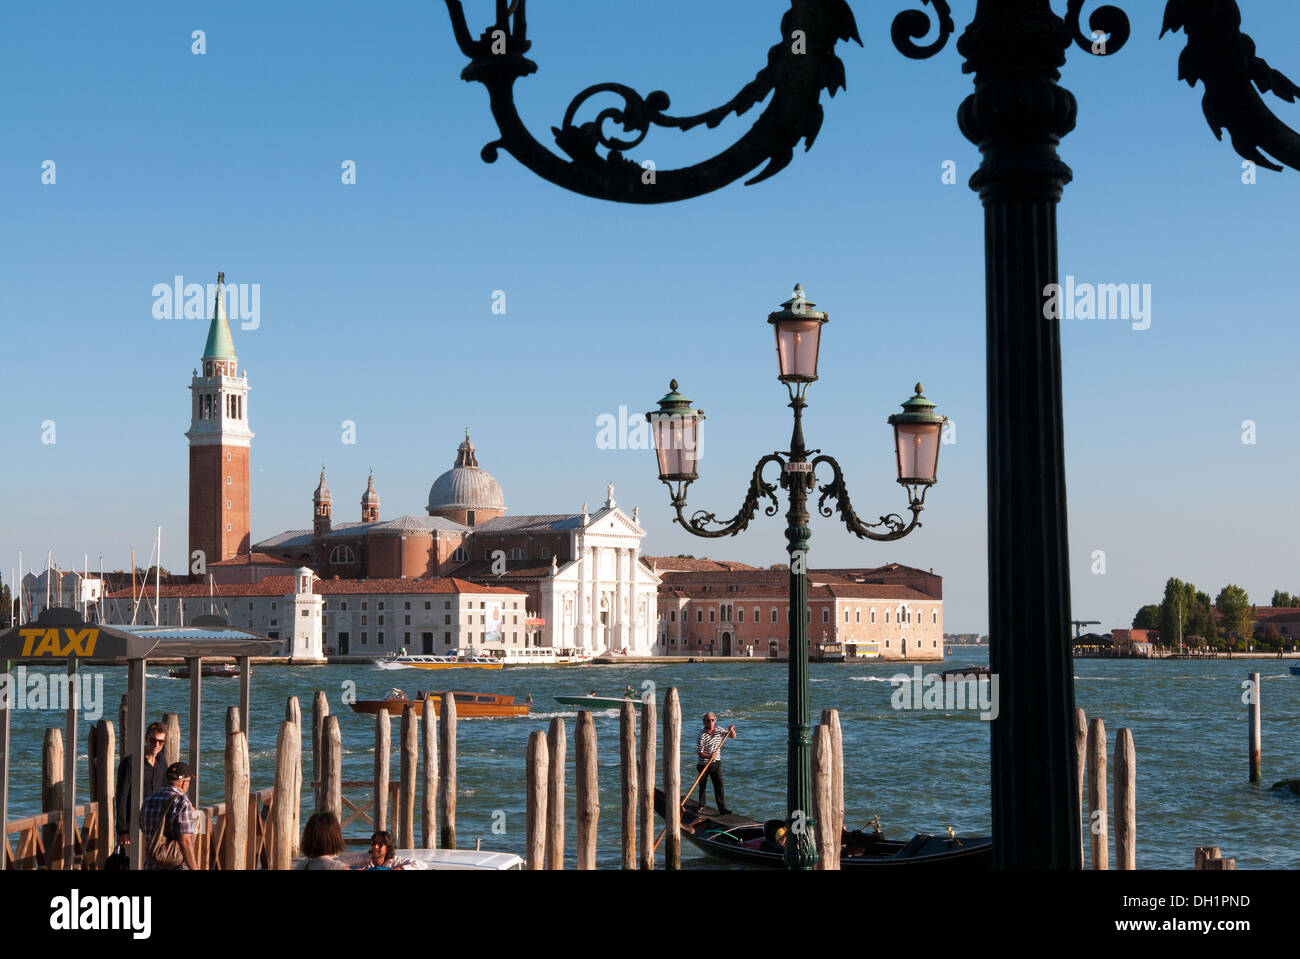 Quay at St Mark's Square with gondolas and the view to San Giorgio Maggiore Island, Venice, UNESCO World Heritage Site, Italy Stock Photo